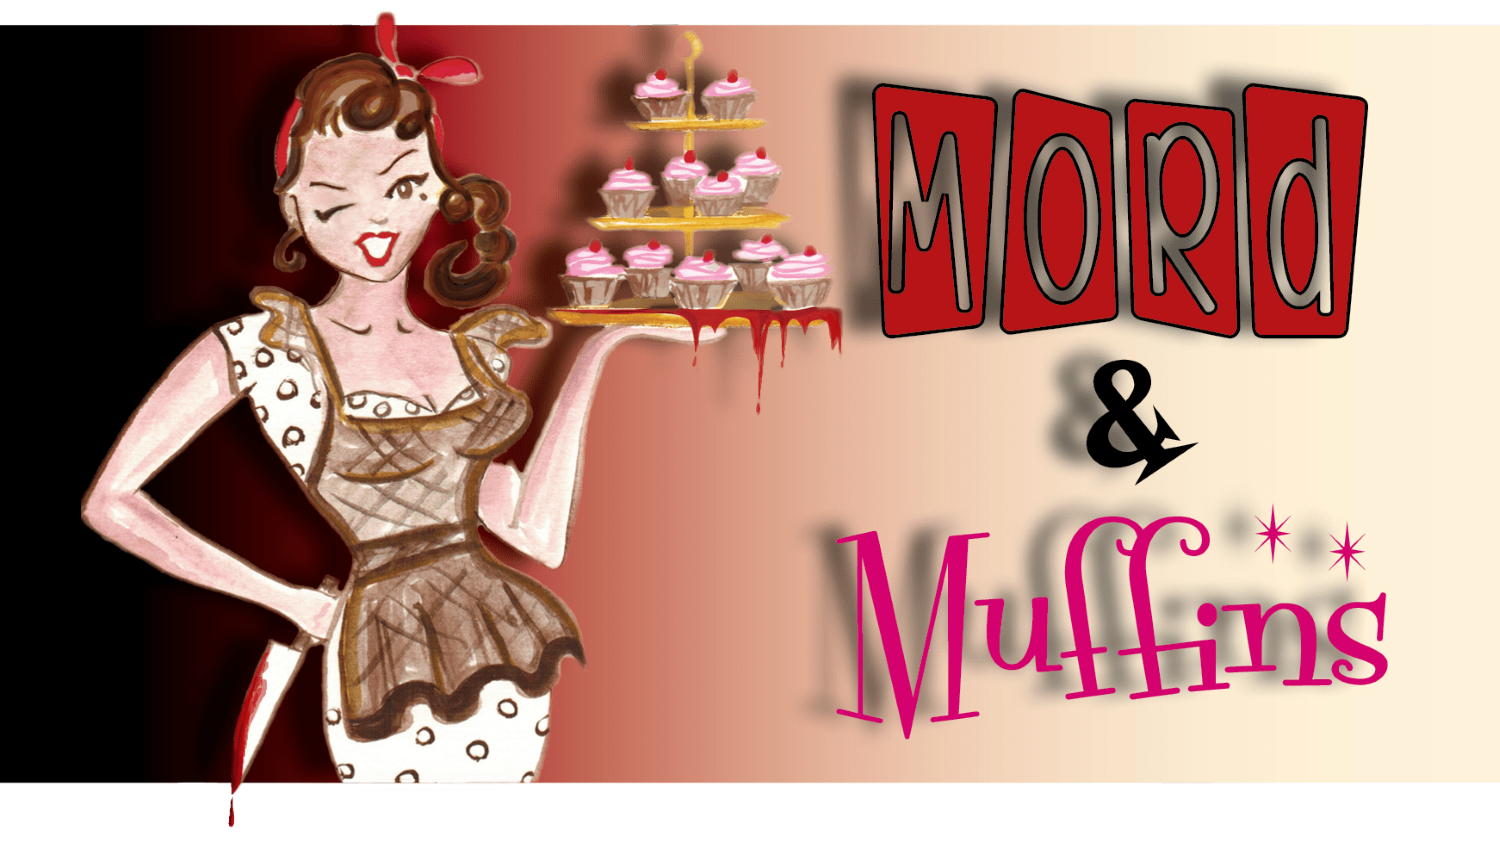 Mord og muffins